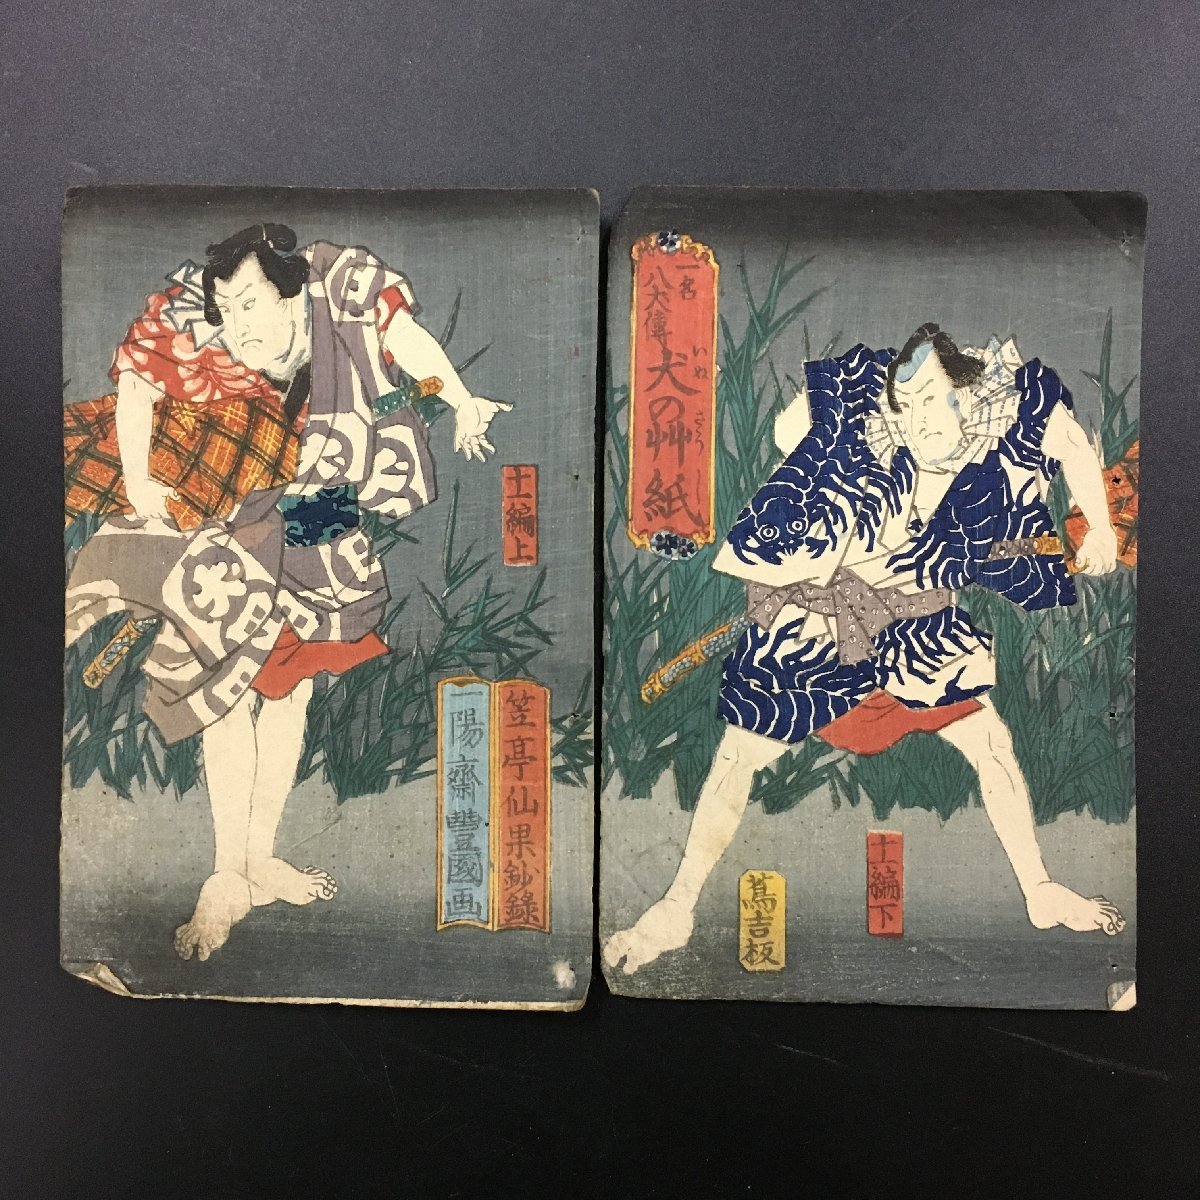 वुडब्लॉक प्रिंट, ढकना, हक्केन्डेन: कुत्तों की कहानियाँ, 11 खंड, दो पैनल सेट, Toyokuni द्वारा, सेन्का, कोइदोउ, त्सुताकिची, 1850, मध्यम आकार की पुस्तक (12x18 सेमी), एदो काल, Ukiyo ए, निशिकी-ए, चित्रकारी, Ukiyo ए, प्रिंटों, अन्य